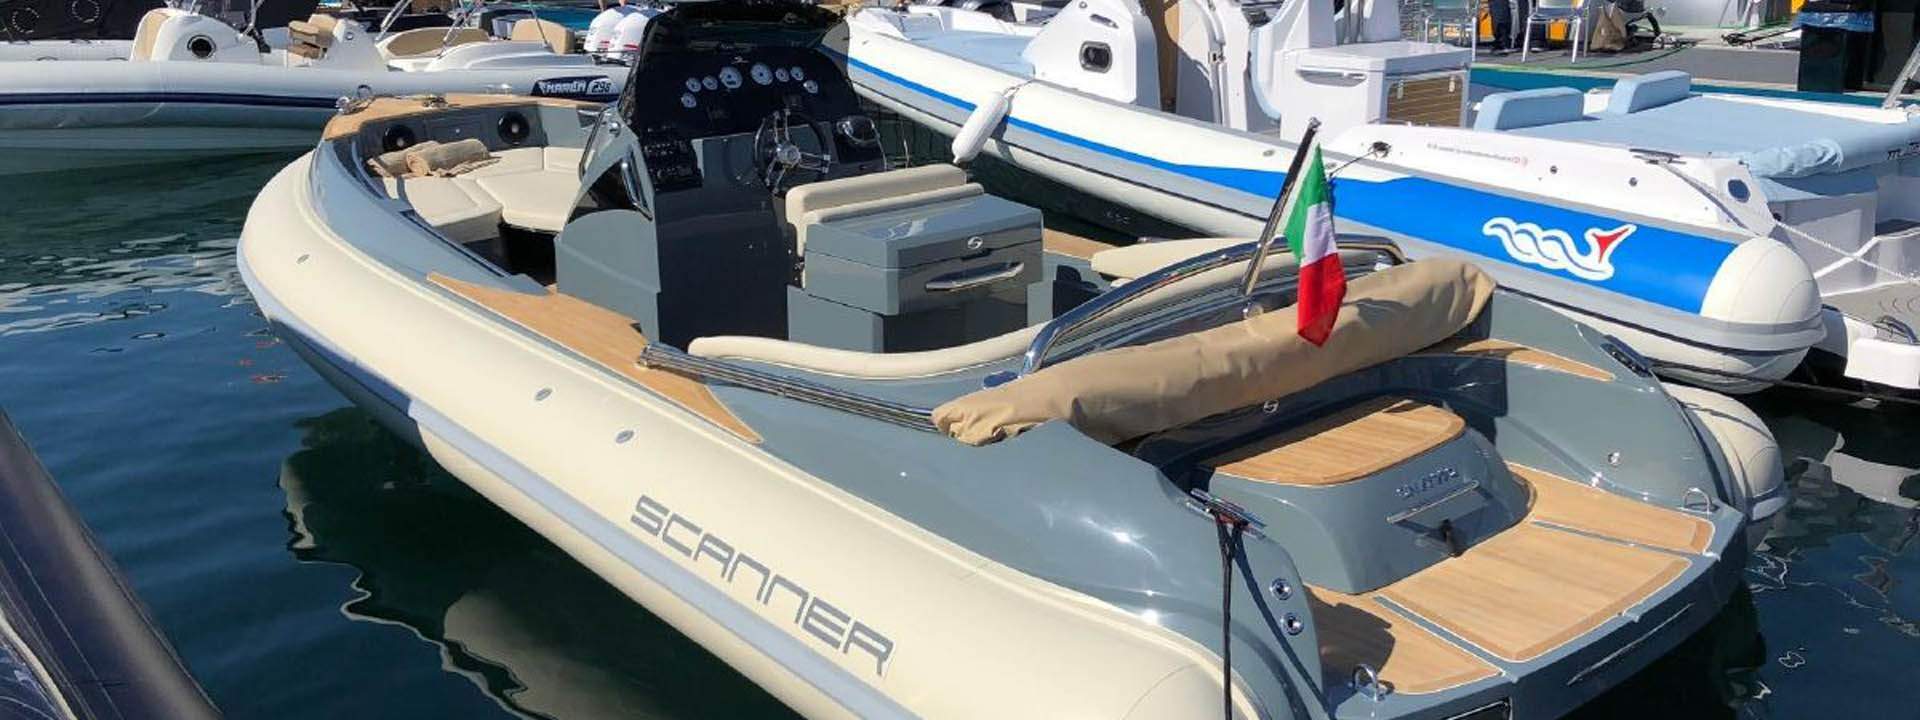 Motor boat Scanner Envy 710